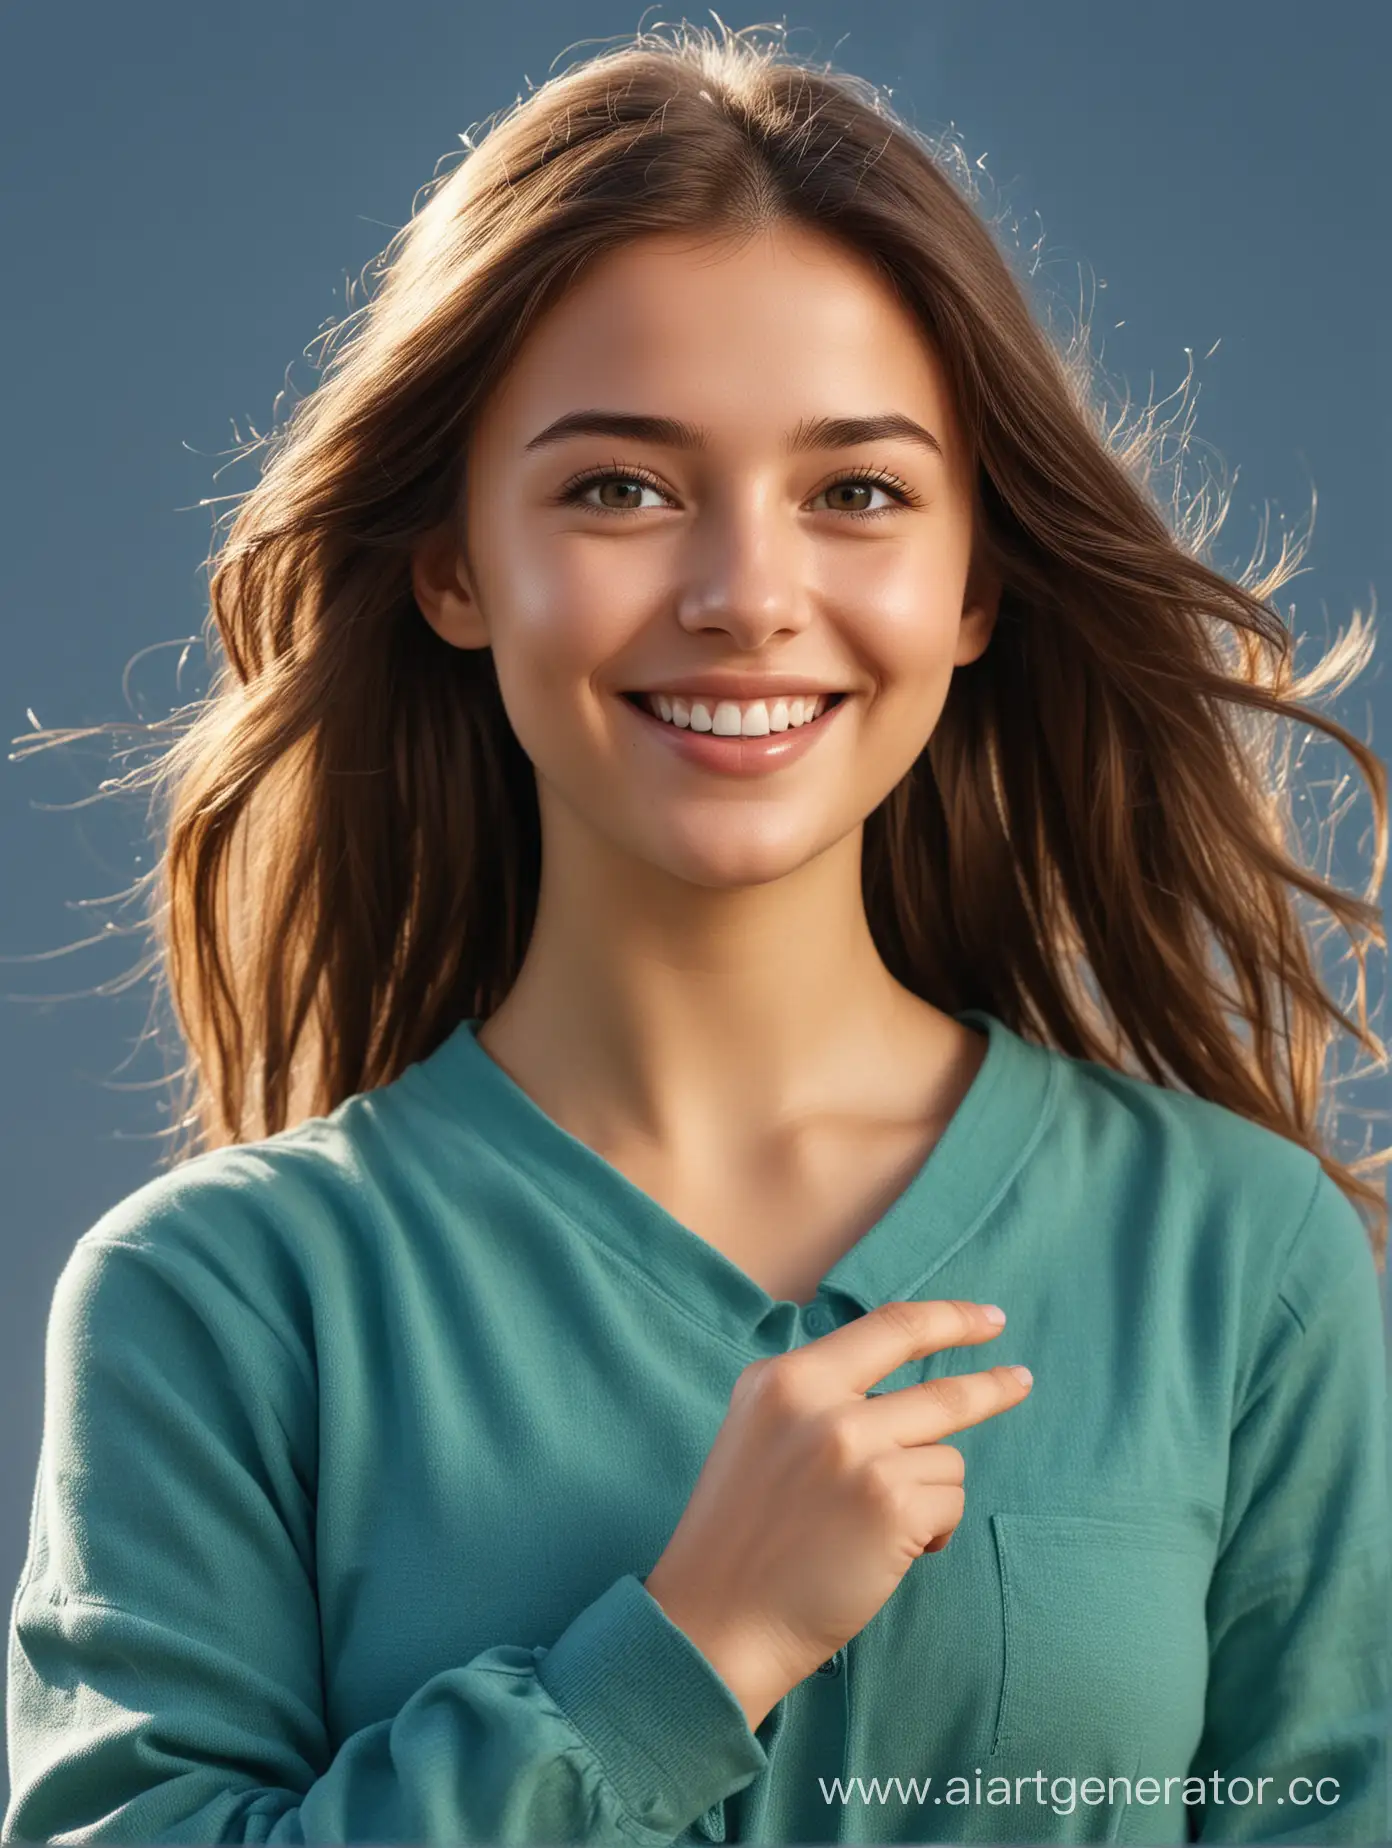 девушка  брюнетка в зелёно голубой одежде в полный рост . показывает жест класс, улыбается, высокая детализация глаз, реалистичное фото, волосы подсвечены солнцем